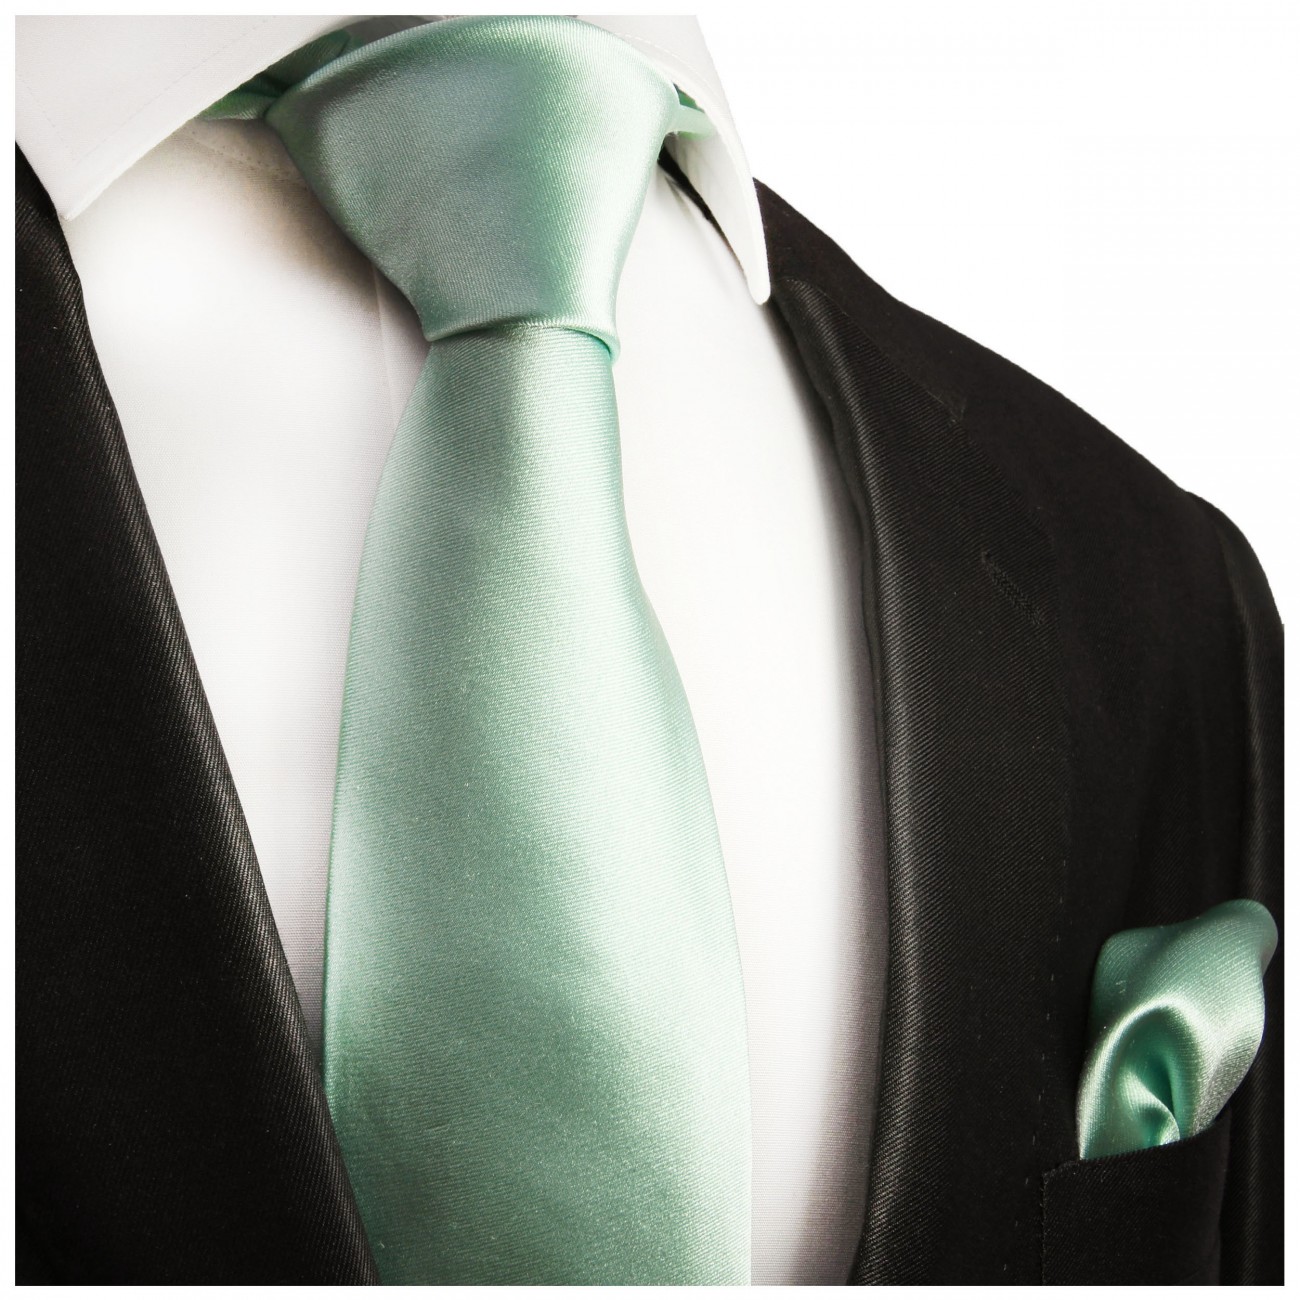 Krawatte mint grün mit Einstecktuch